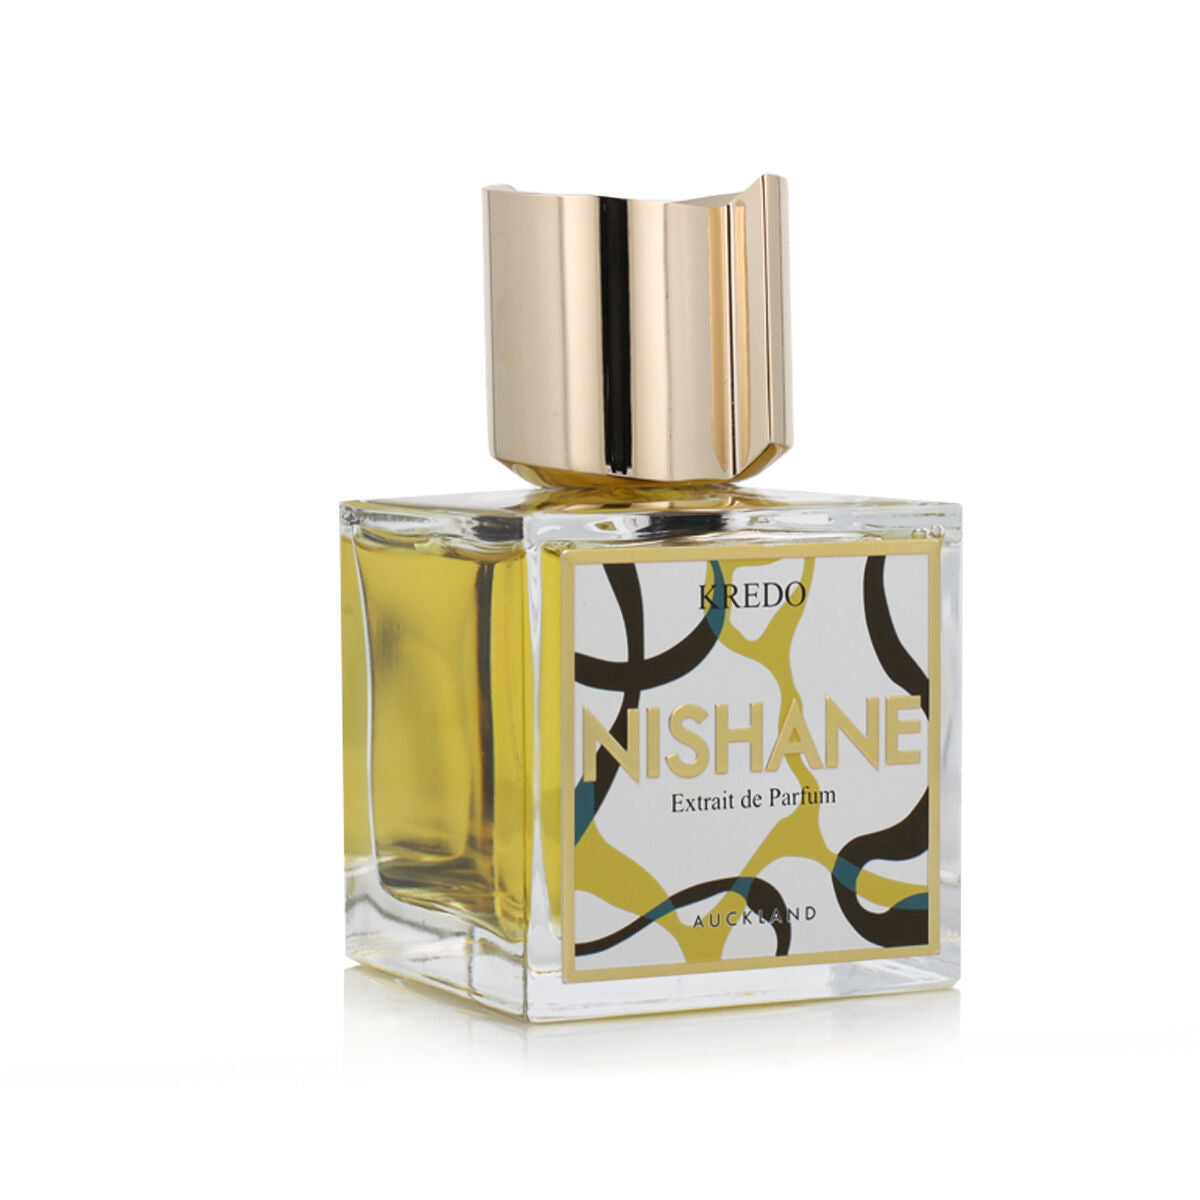 Unisex Perfume Nishane Kredo 100 ml